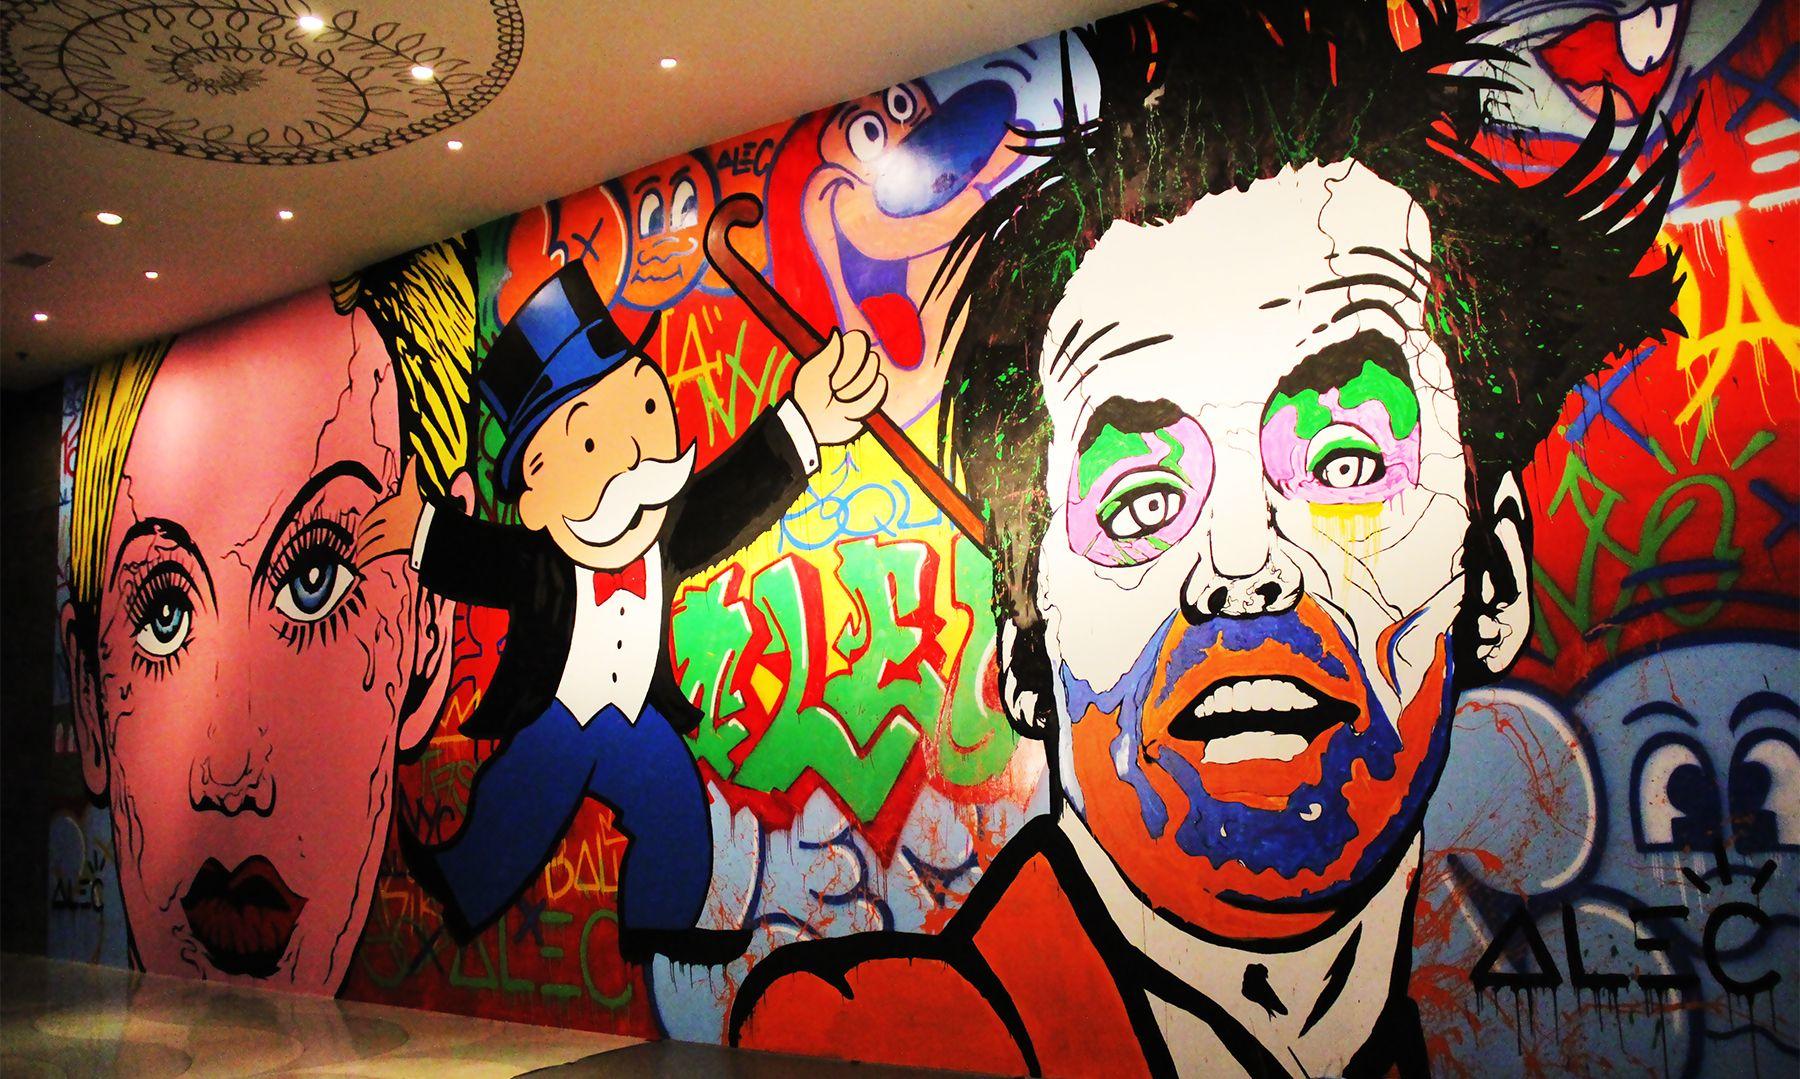 W HOTEL BALI: New York graffiti artist, Alec Monopoly does bespoke